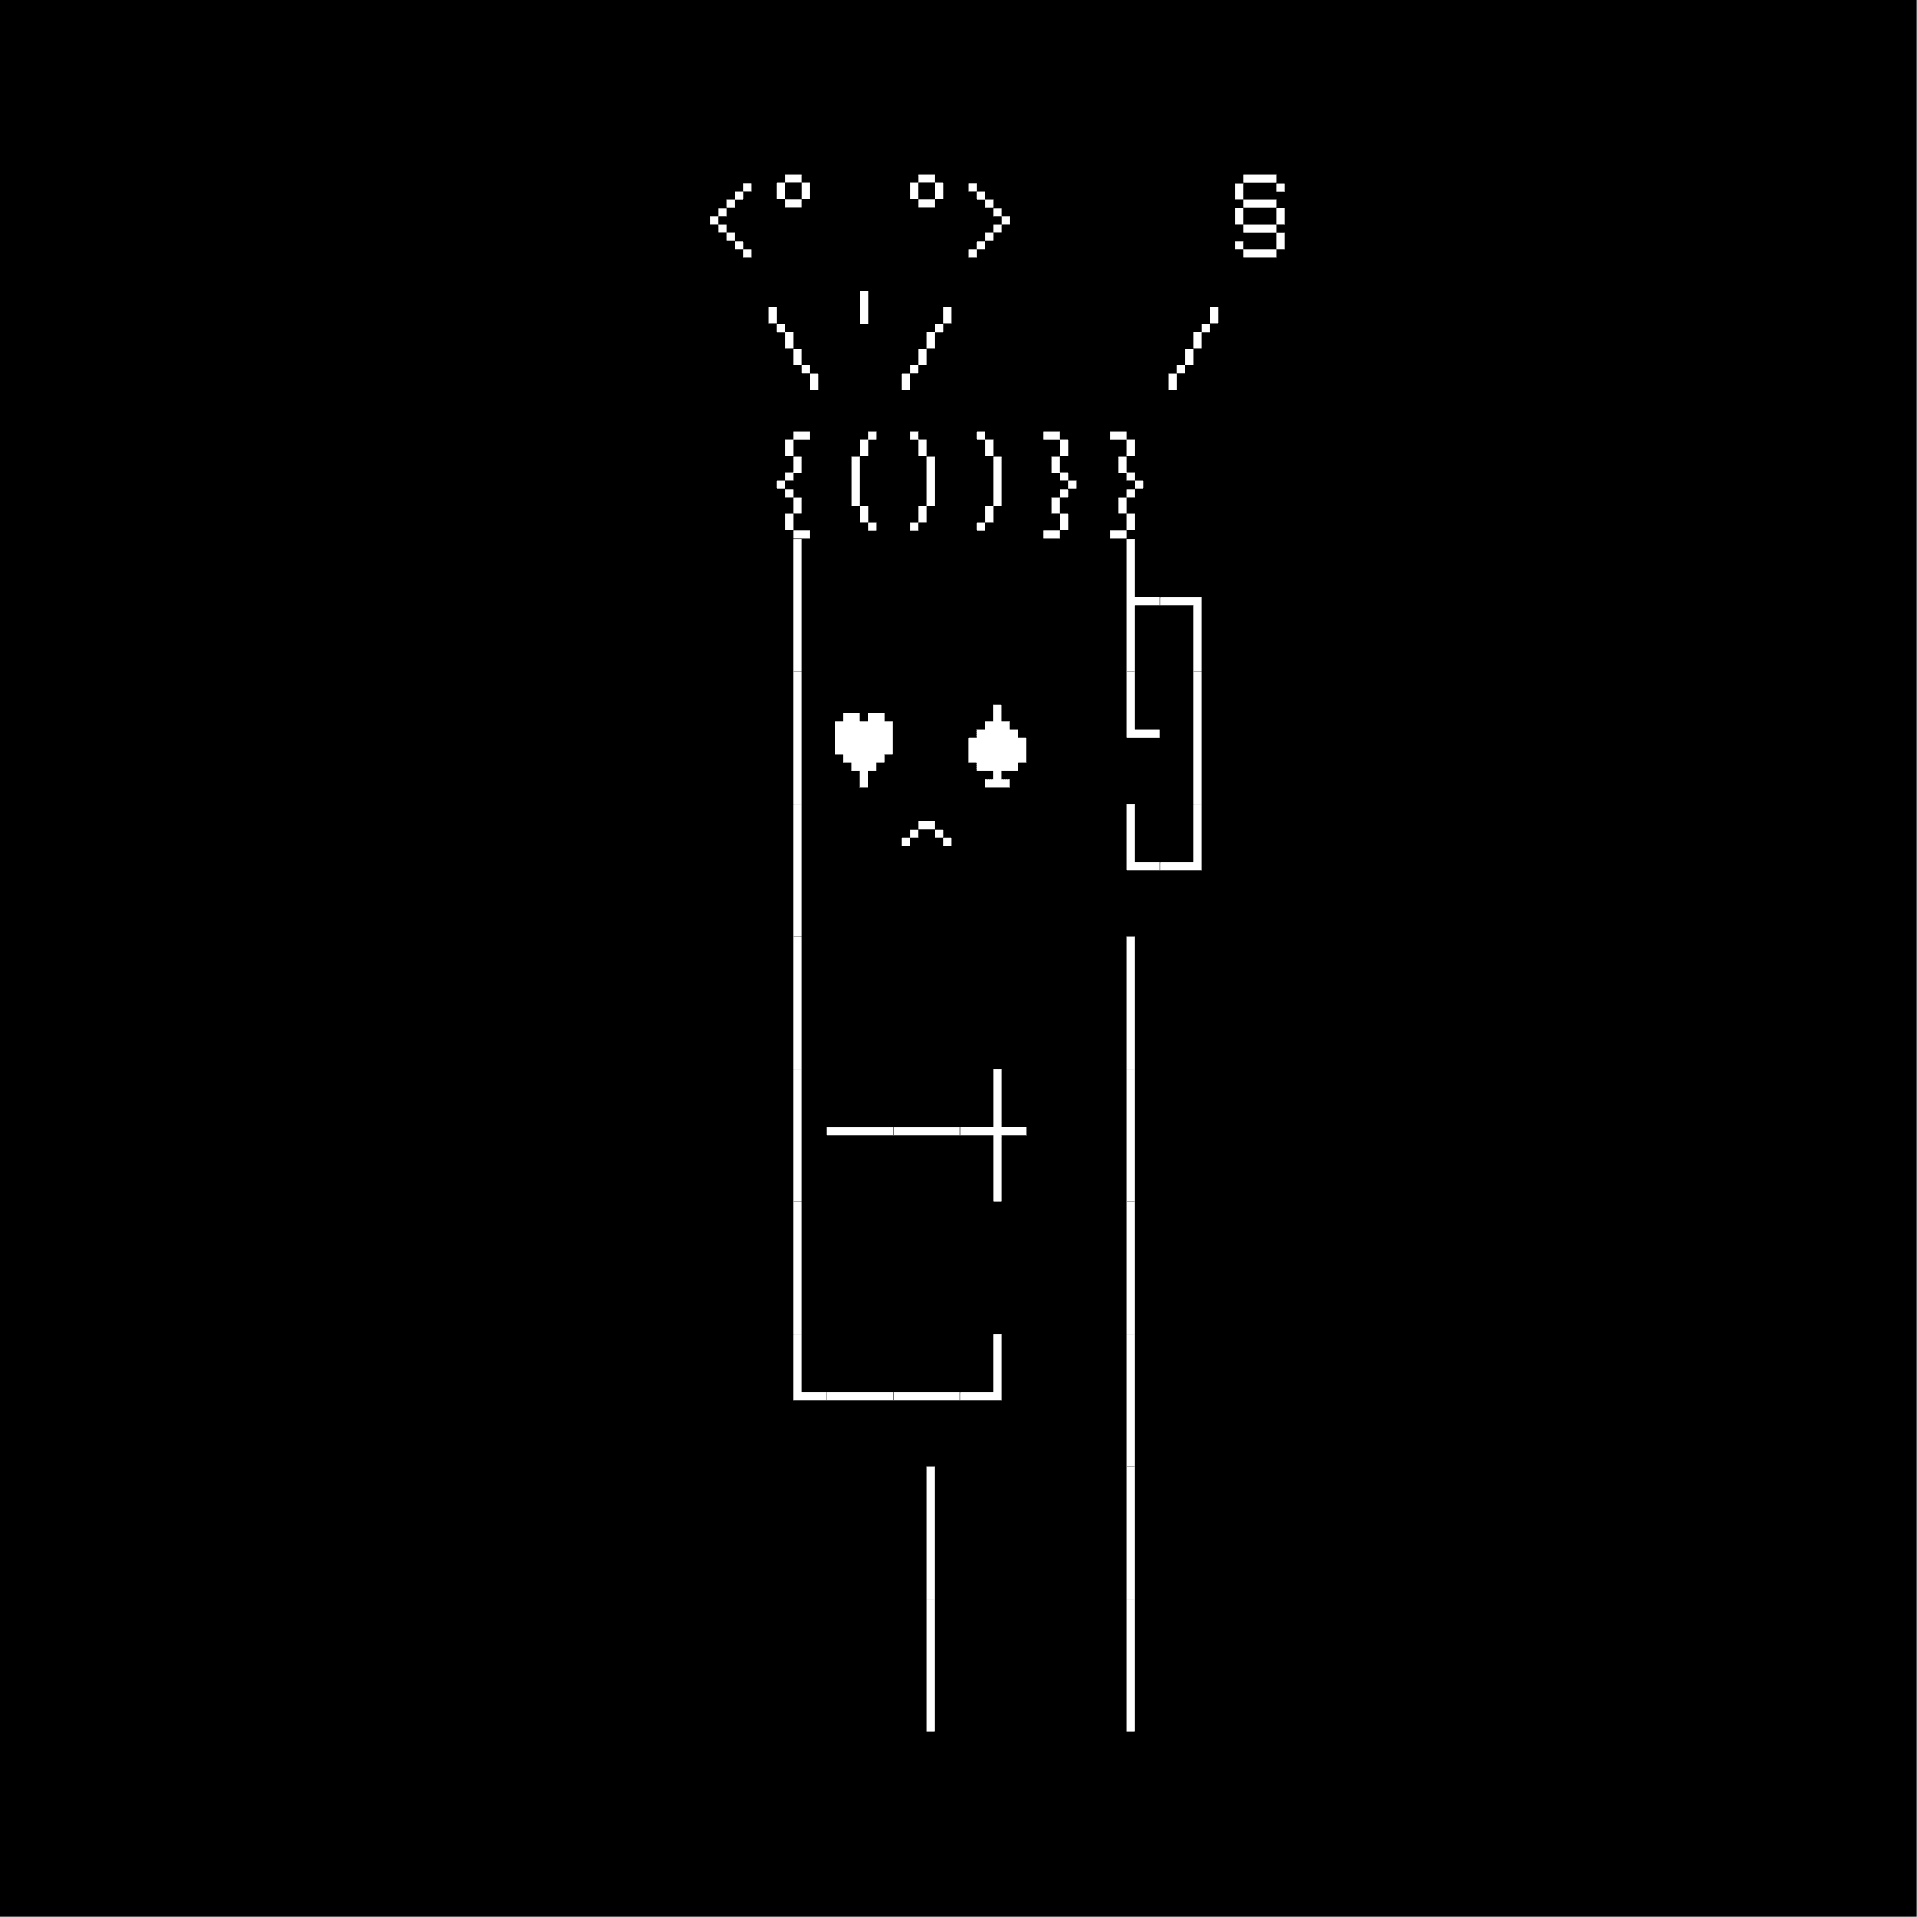 ASCII Punk #675: The Dreamer